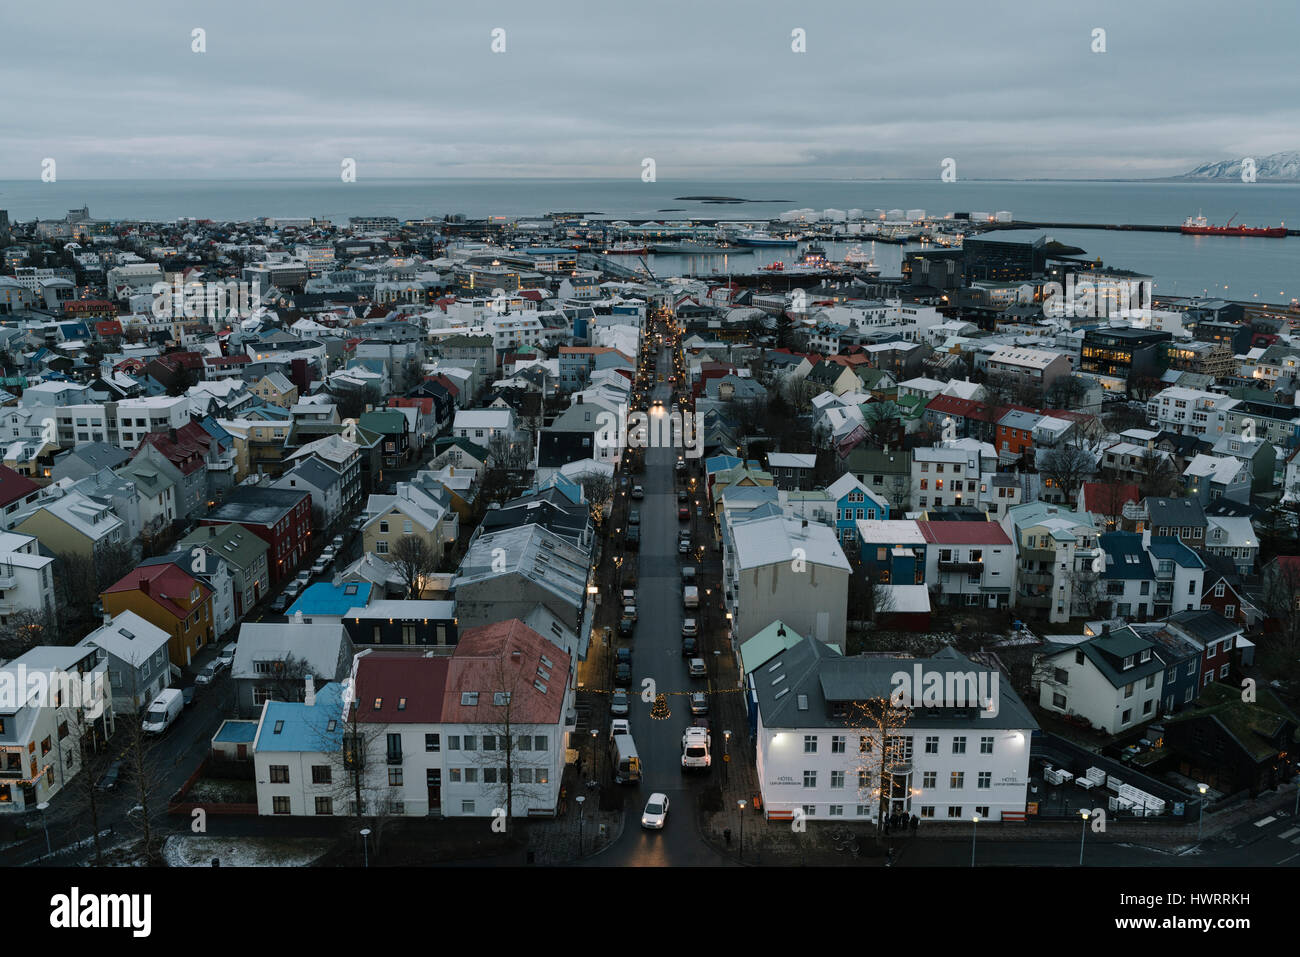 Iceland Travel Stock Photo